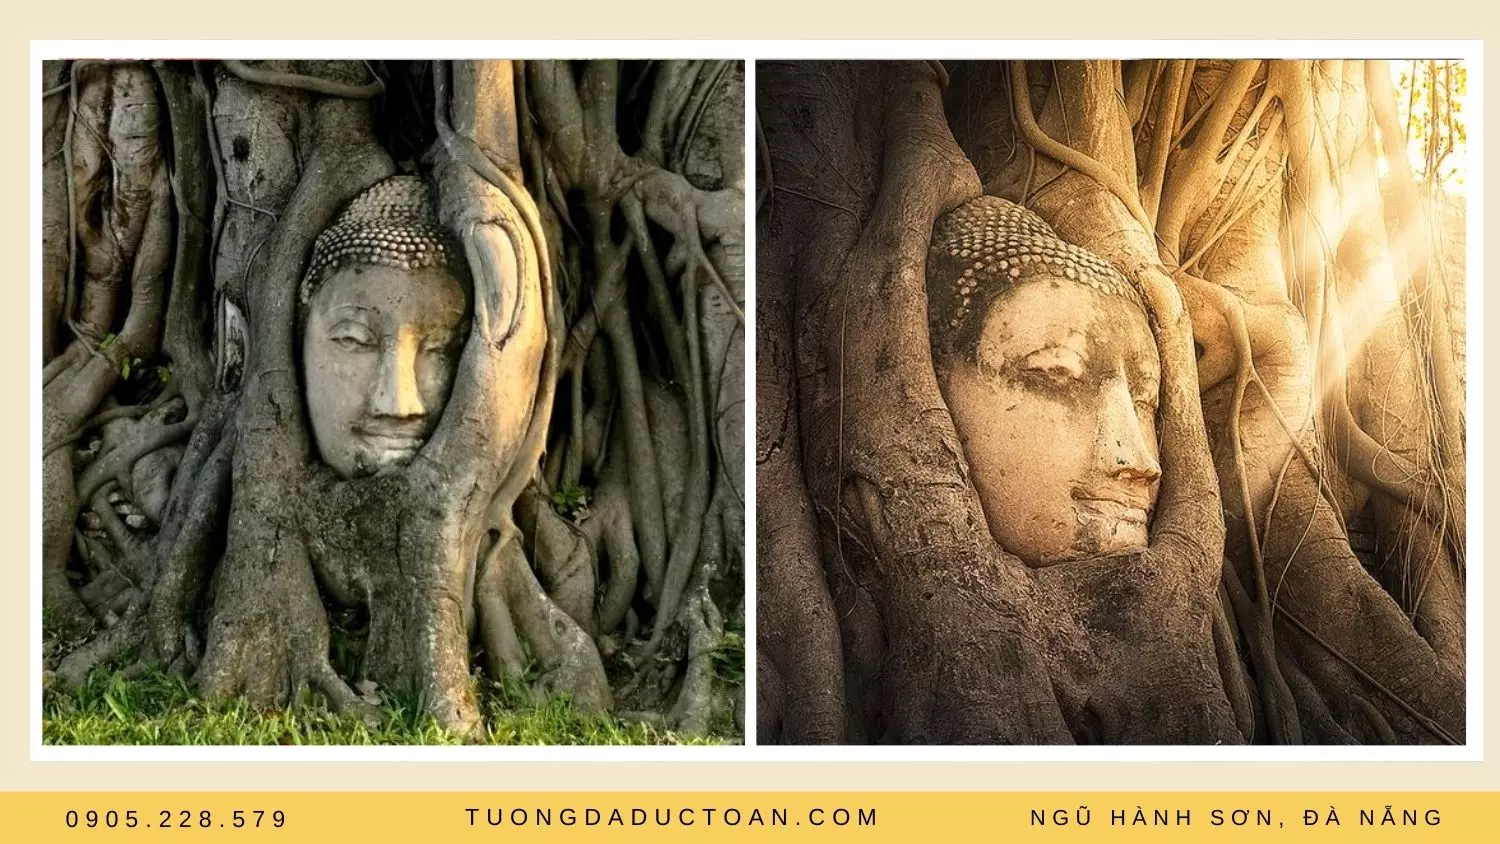 Tượng mặt Phật 700 tuổi ẩn mình trong rễ cây cổ thụ ở phố Ayutthaya của Thái Lan